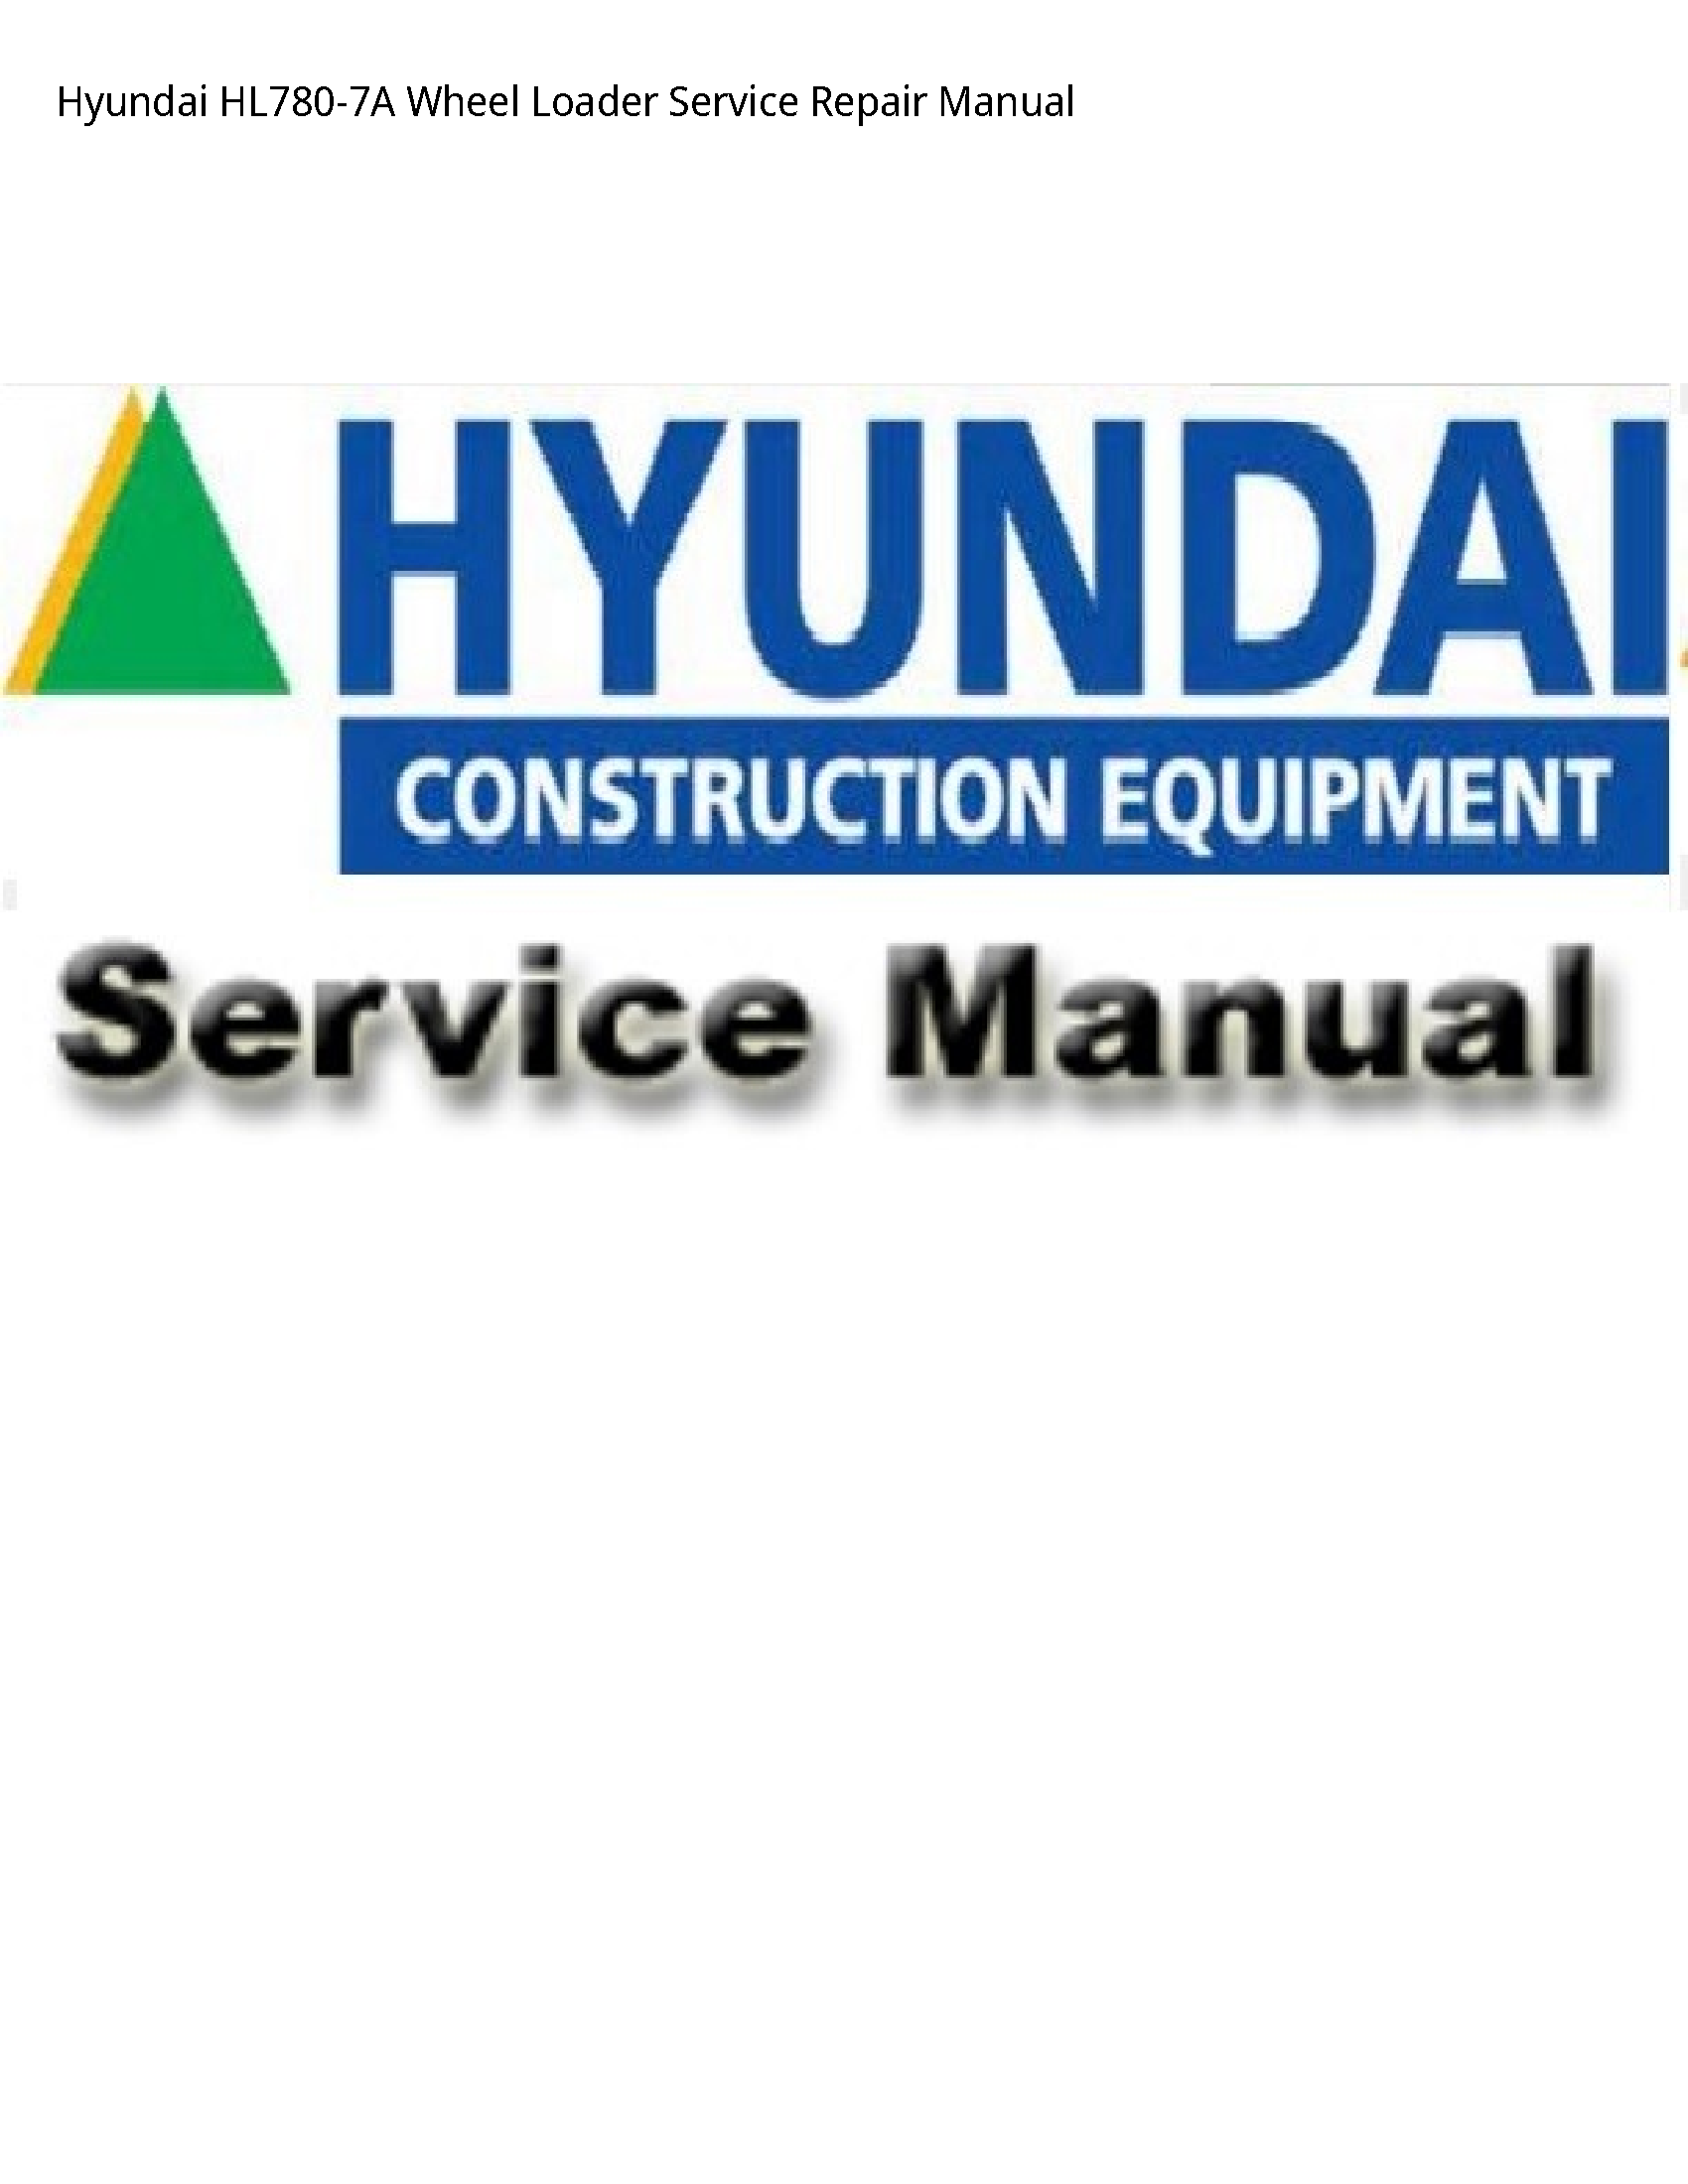 Hyundai HL780-7A Wheel Loader manual